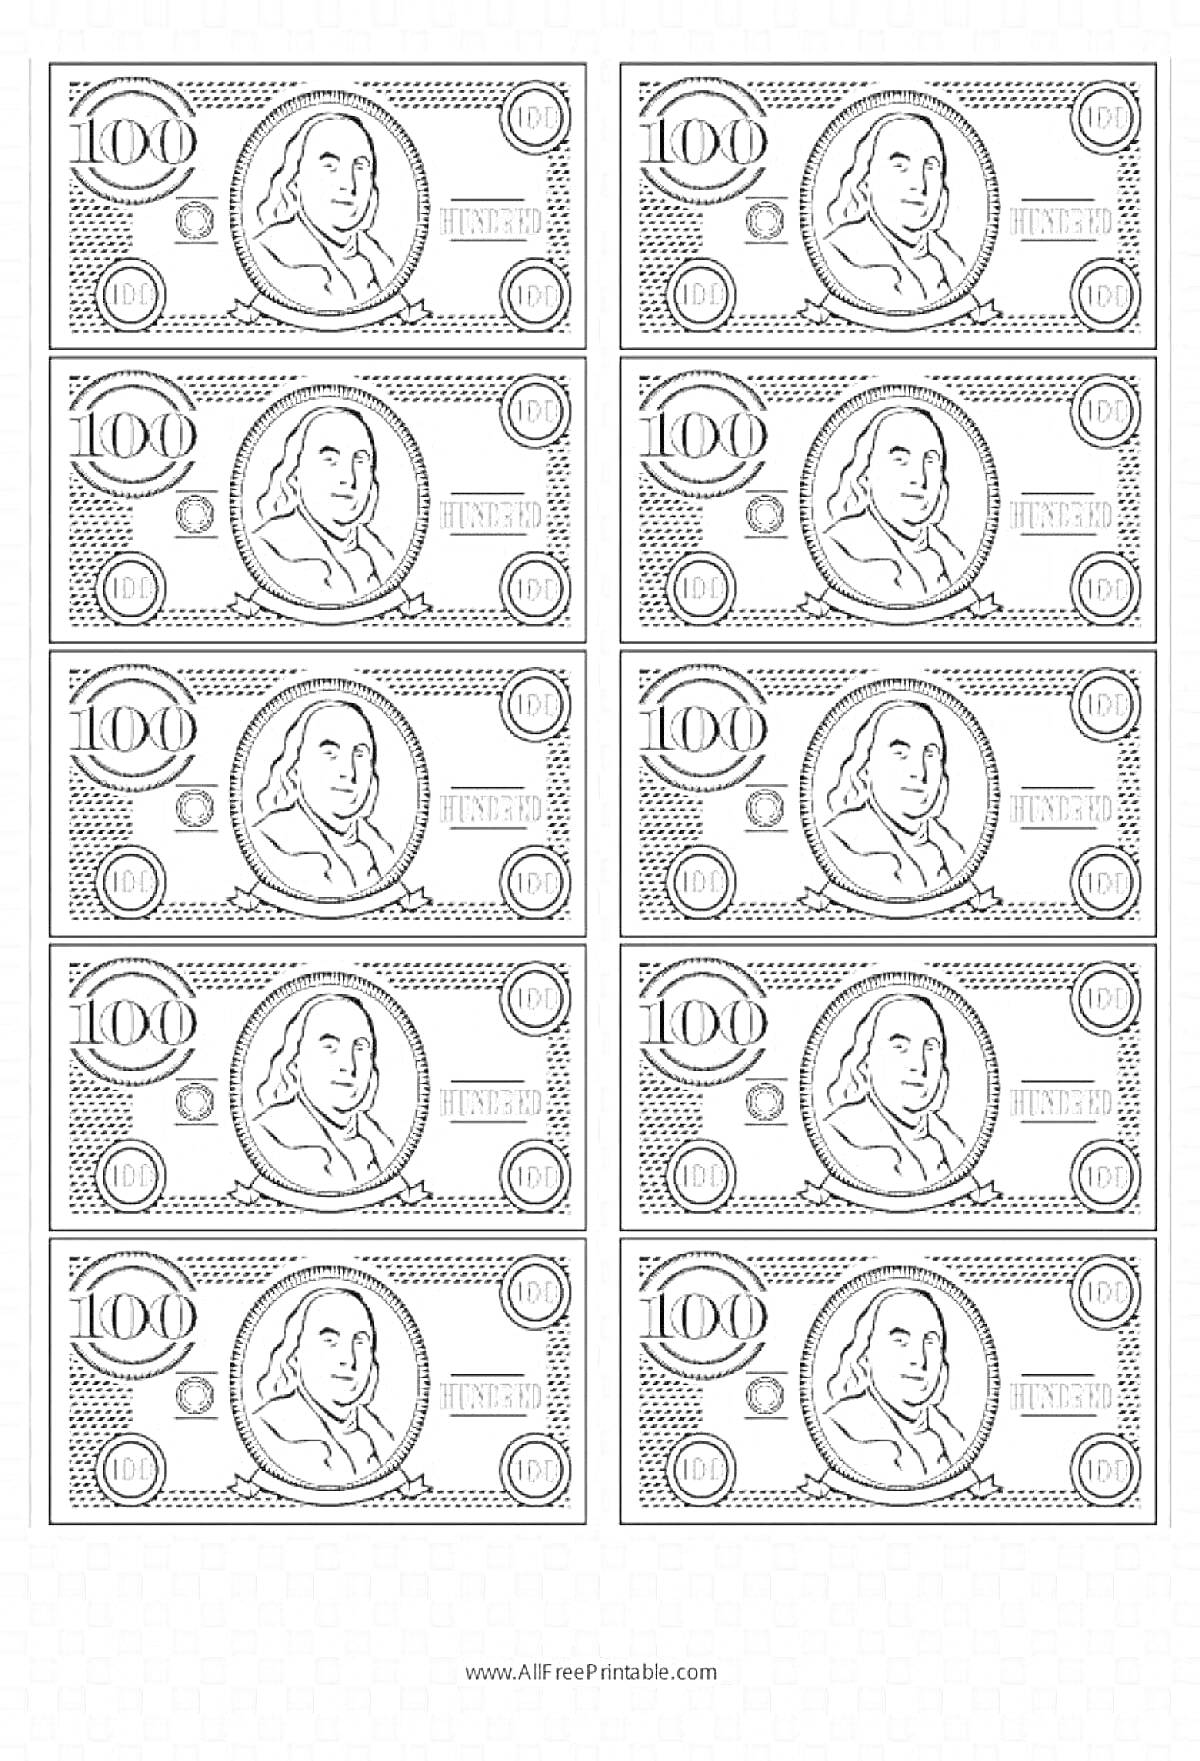 Раскраска с изображением 10 банкнот по 100 долларов США с портретом мужчины, цифрами и символами